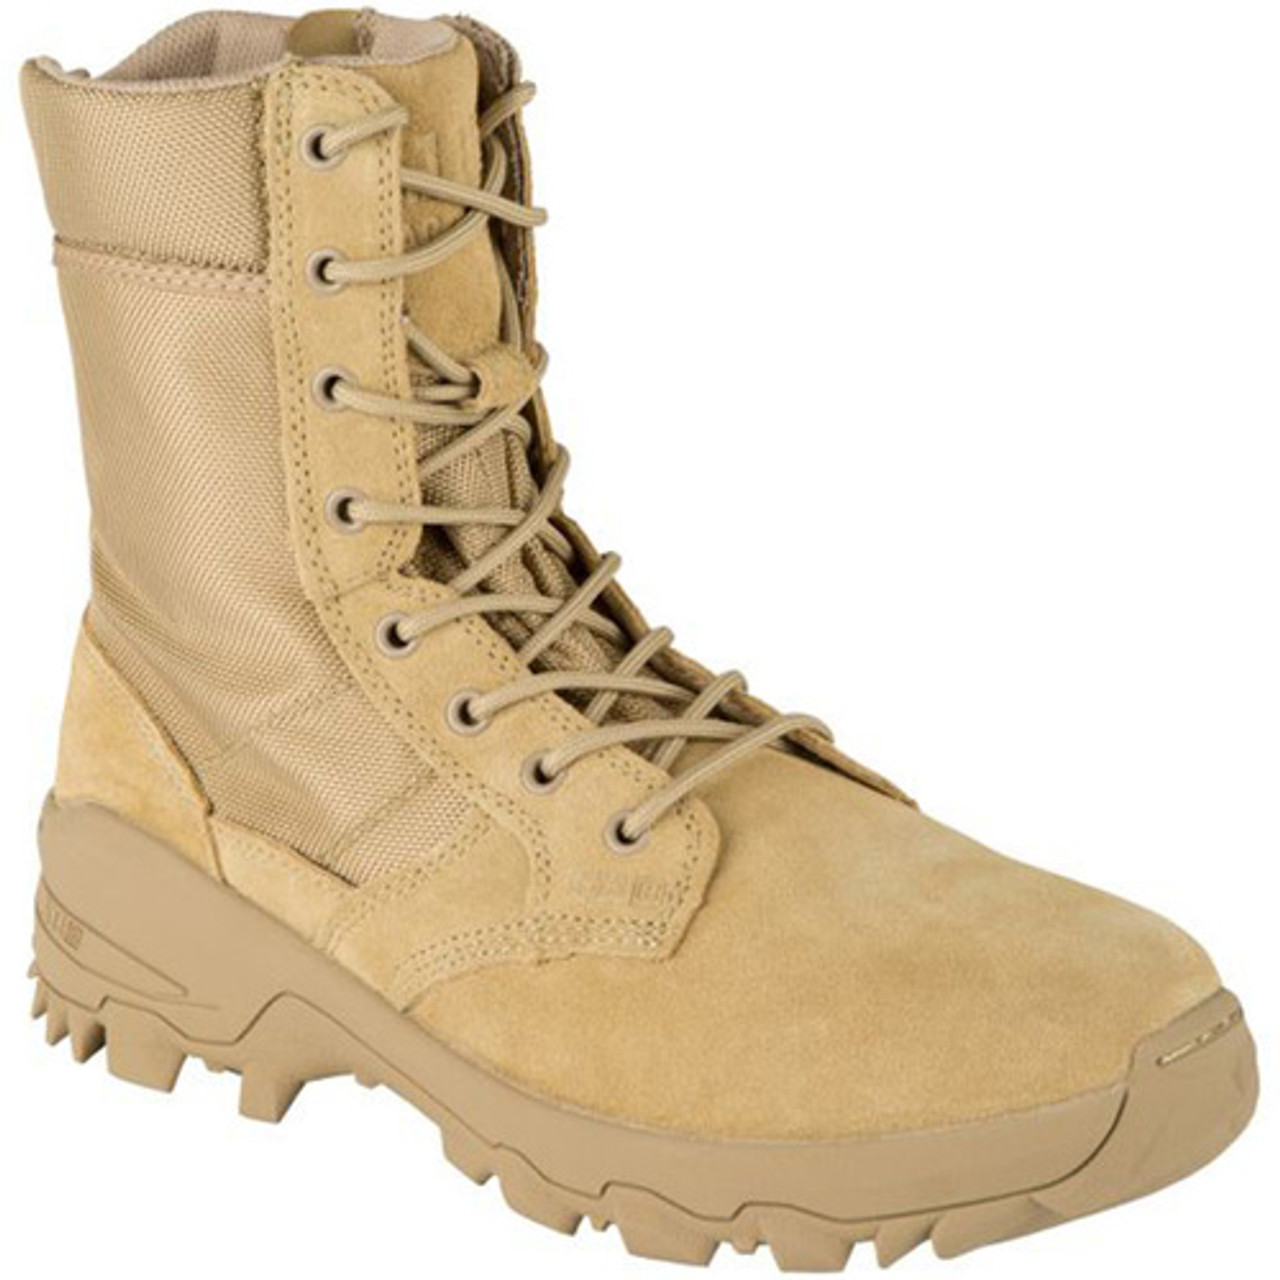 Buy > coyote brown side zip boots > in stock